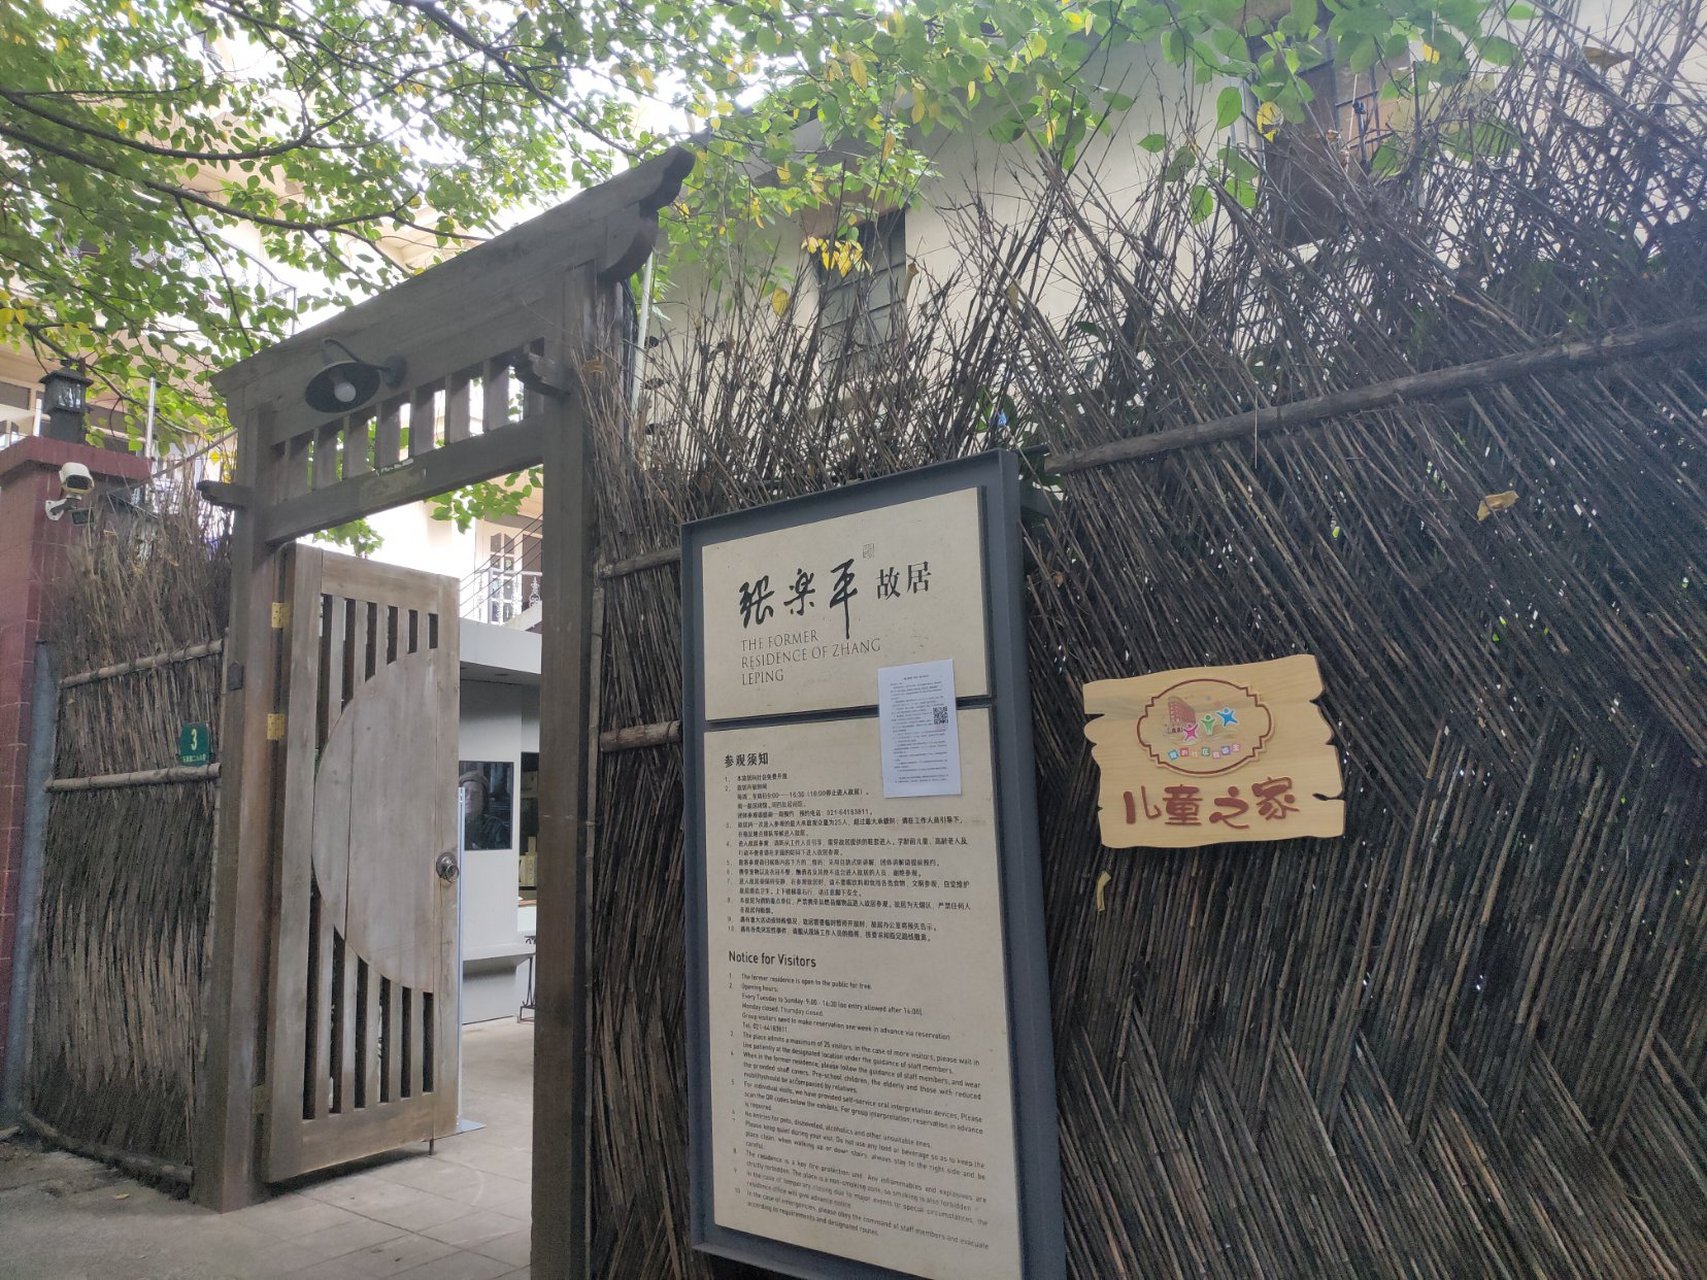 上海,张乐平故居该故居免费对外开放,可以直接在现场预约后进入参观